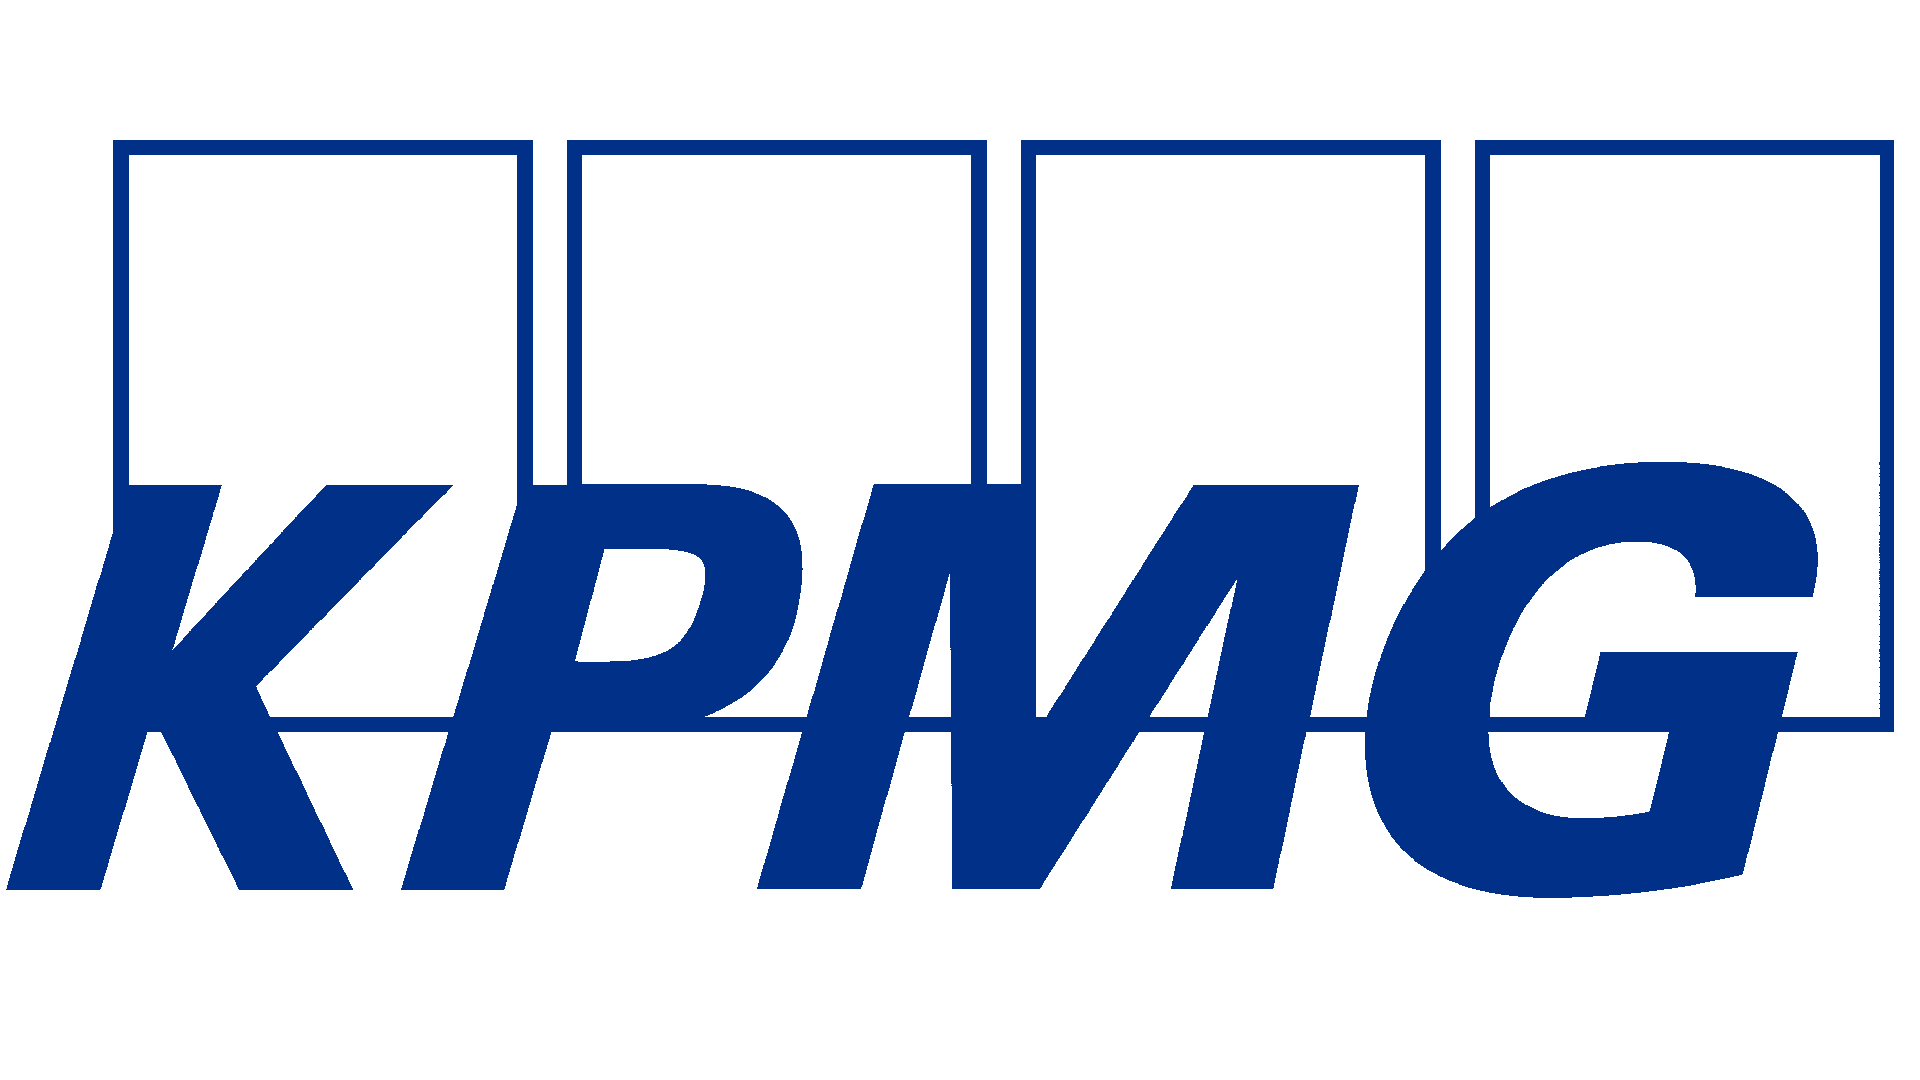 KPMG-Logo 02-2021.png